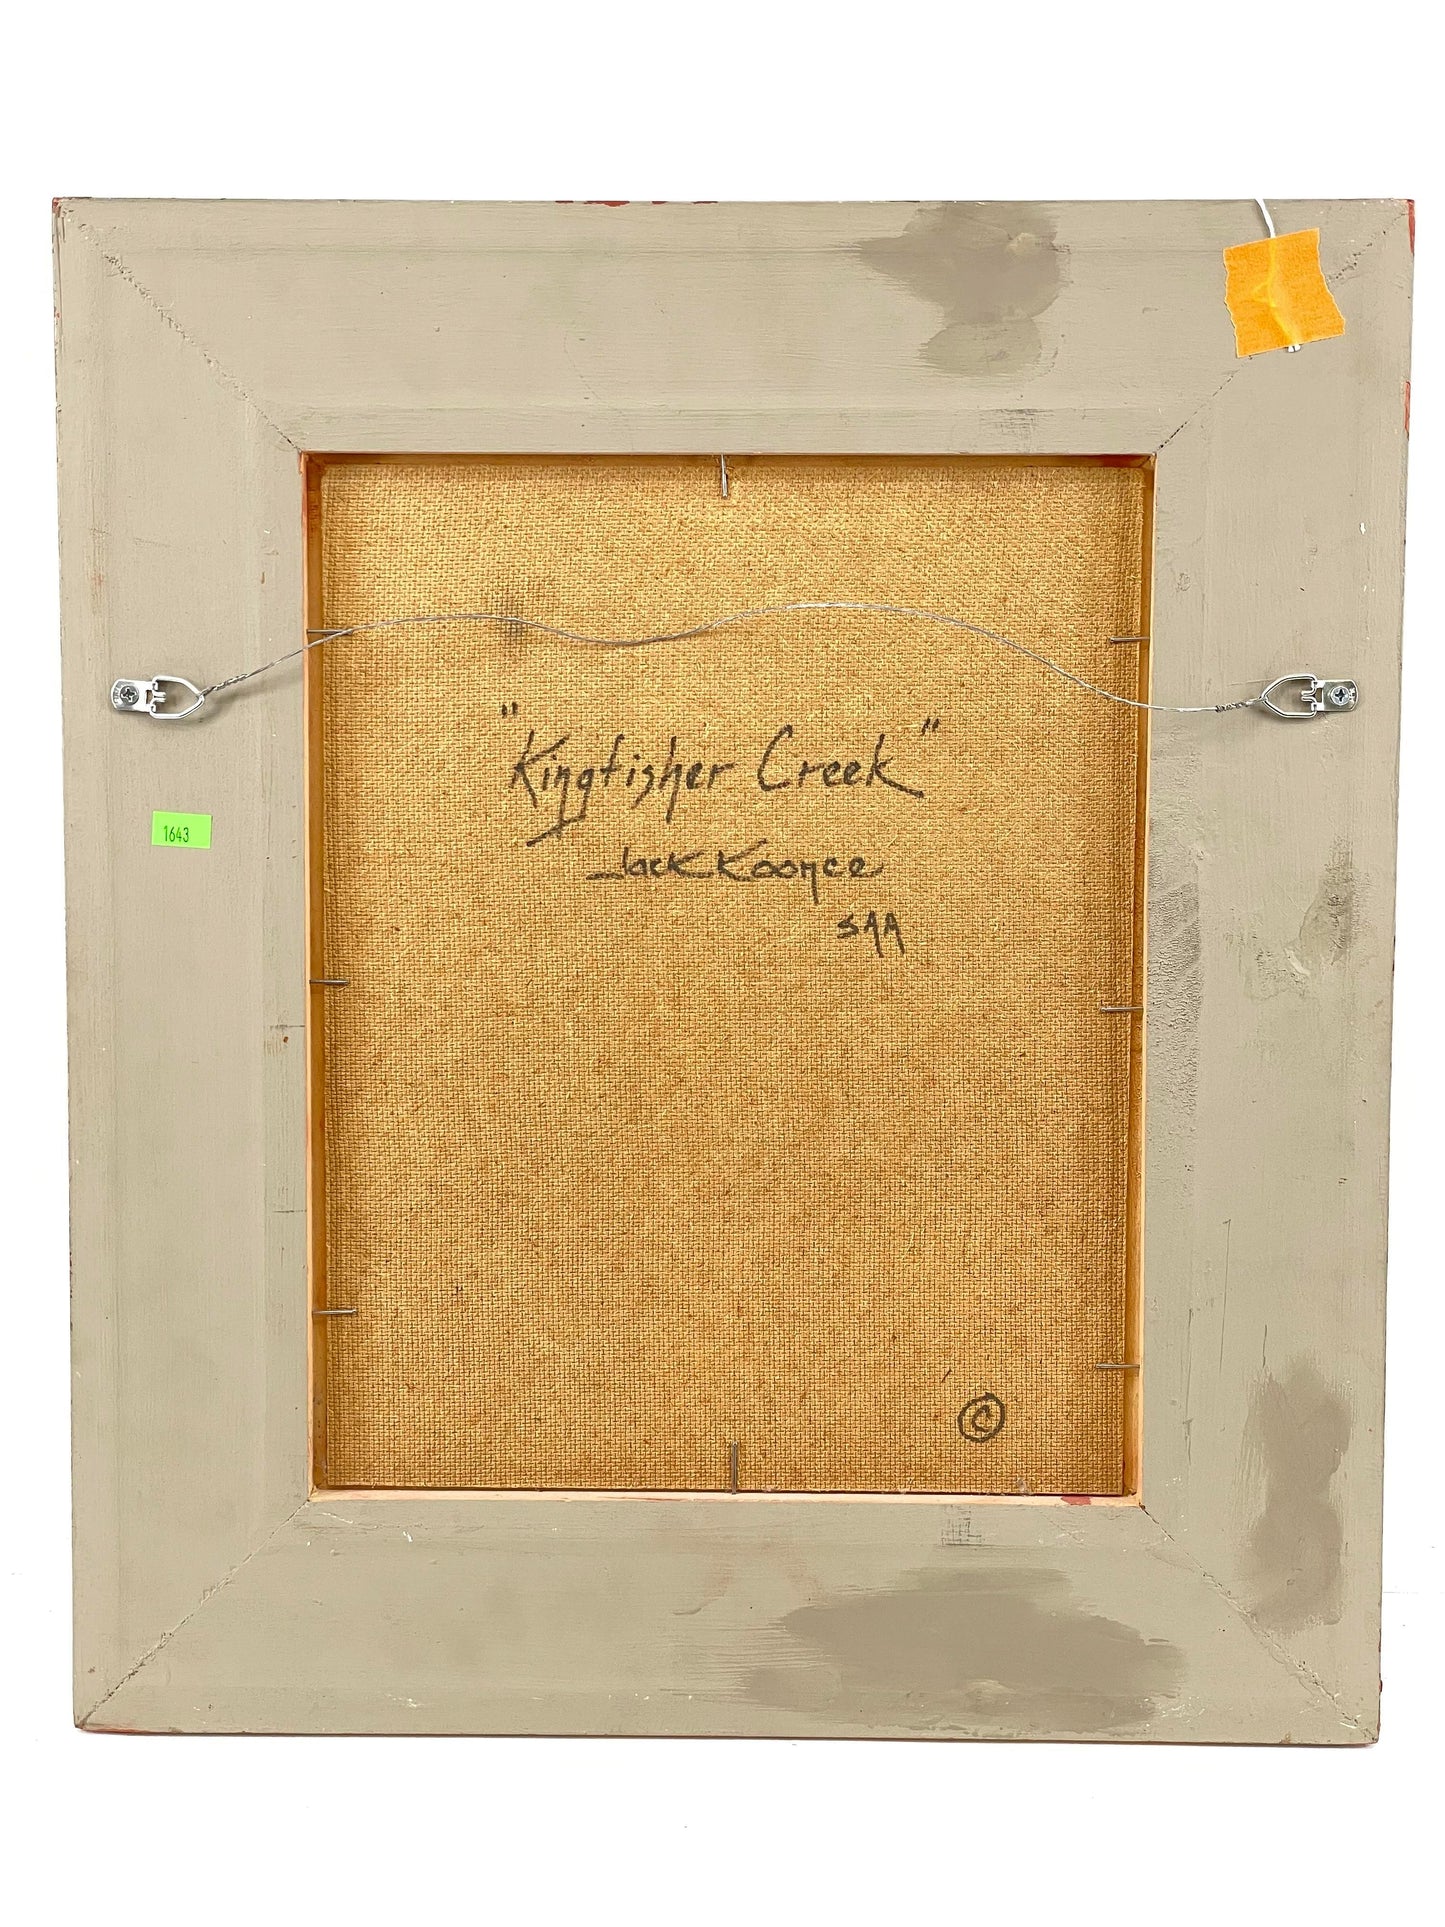 Jack Koonce - Kingfisher Creek 14" x 11"